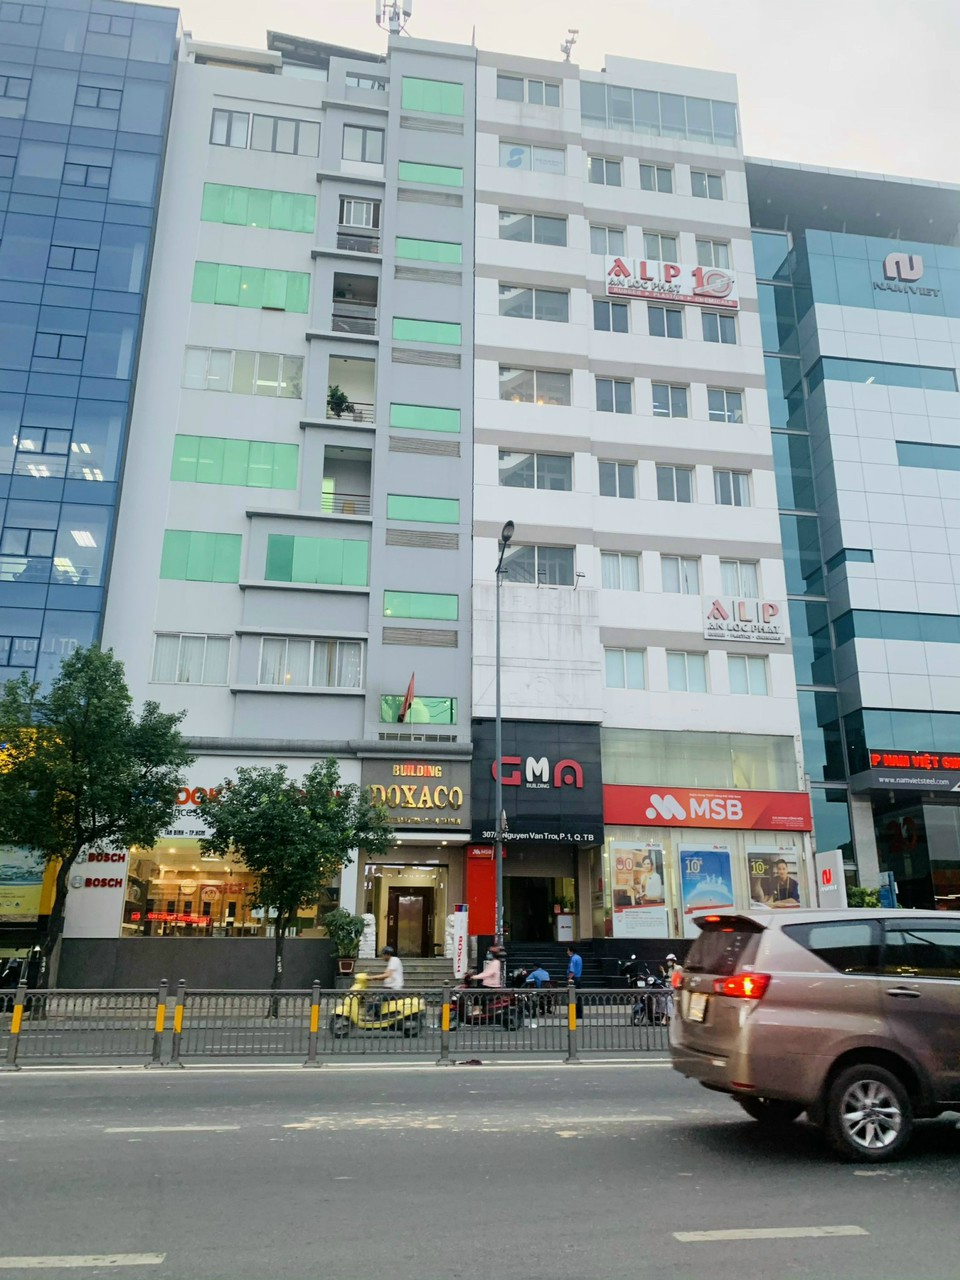 Cần bán gấp nhà mặt tiền đường lớn Nguyễn Thái Học, P. Cầu Ông Lãnh, Q1. DT: 7x20m, 3 lầu giá 82 tỷ TL. LH: 0909746977